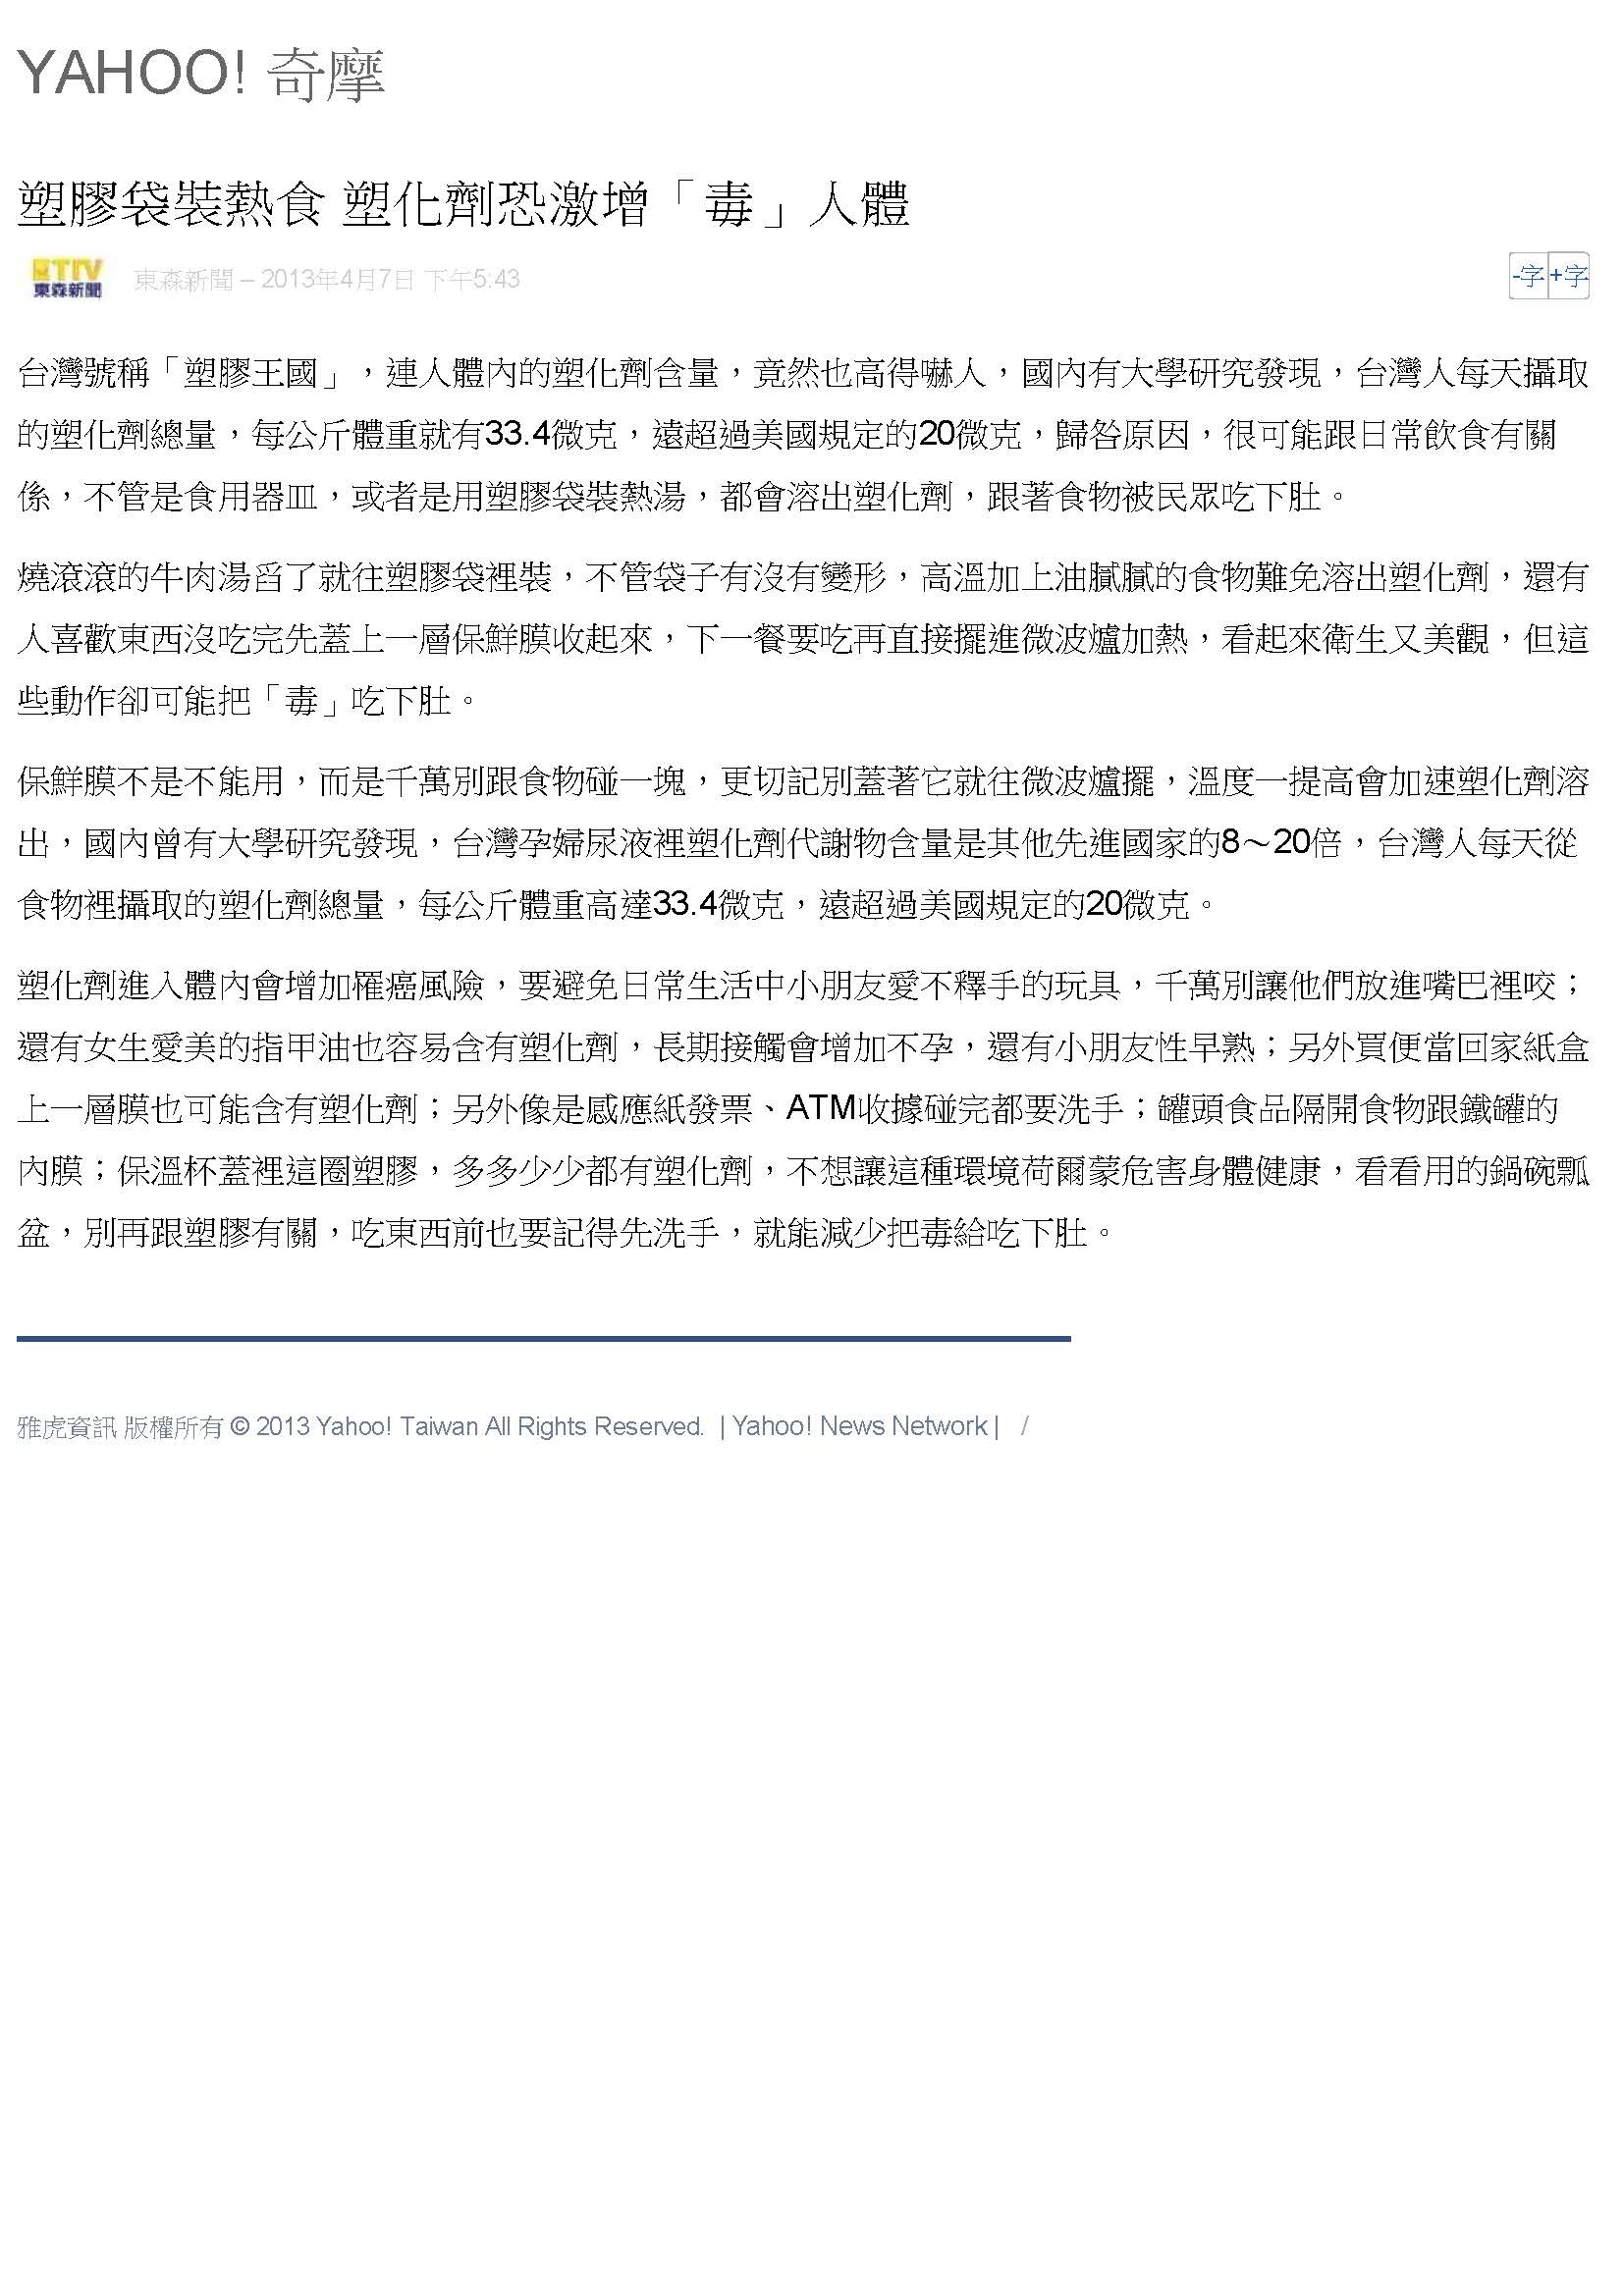 台灣人人體塑化劑含量 超過國際規定